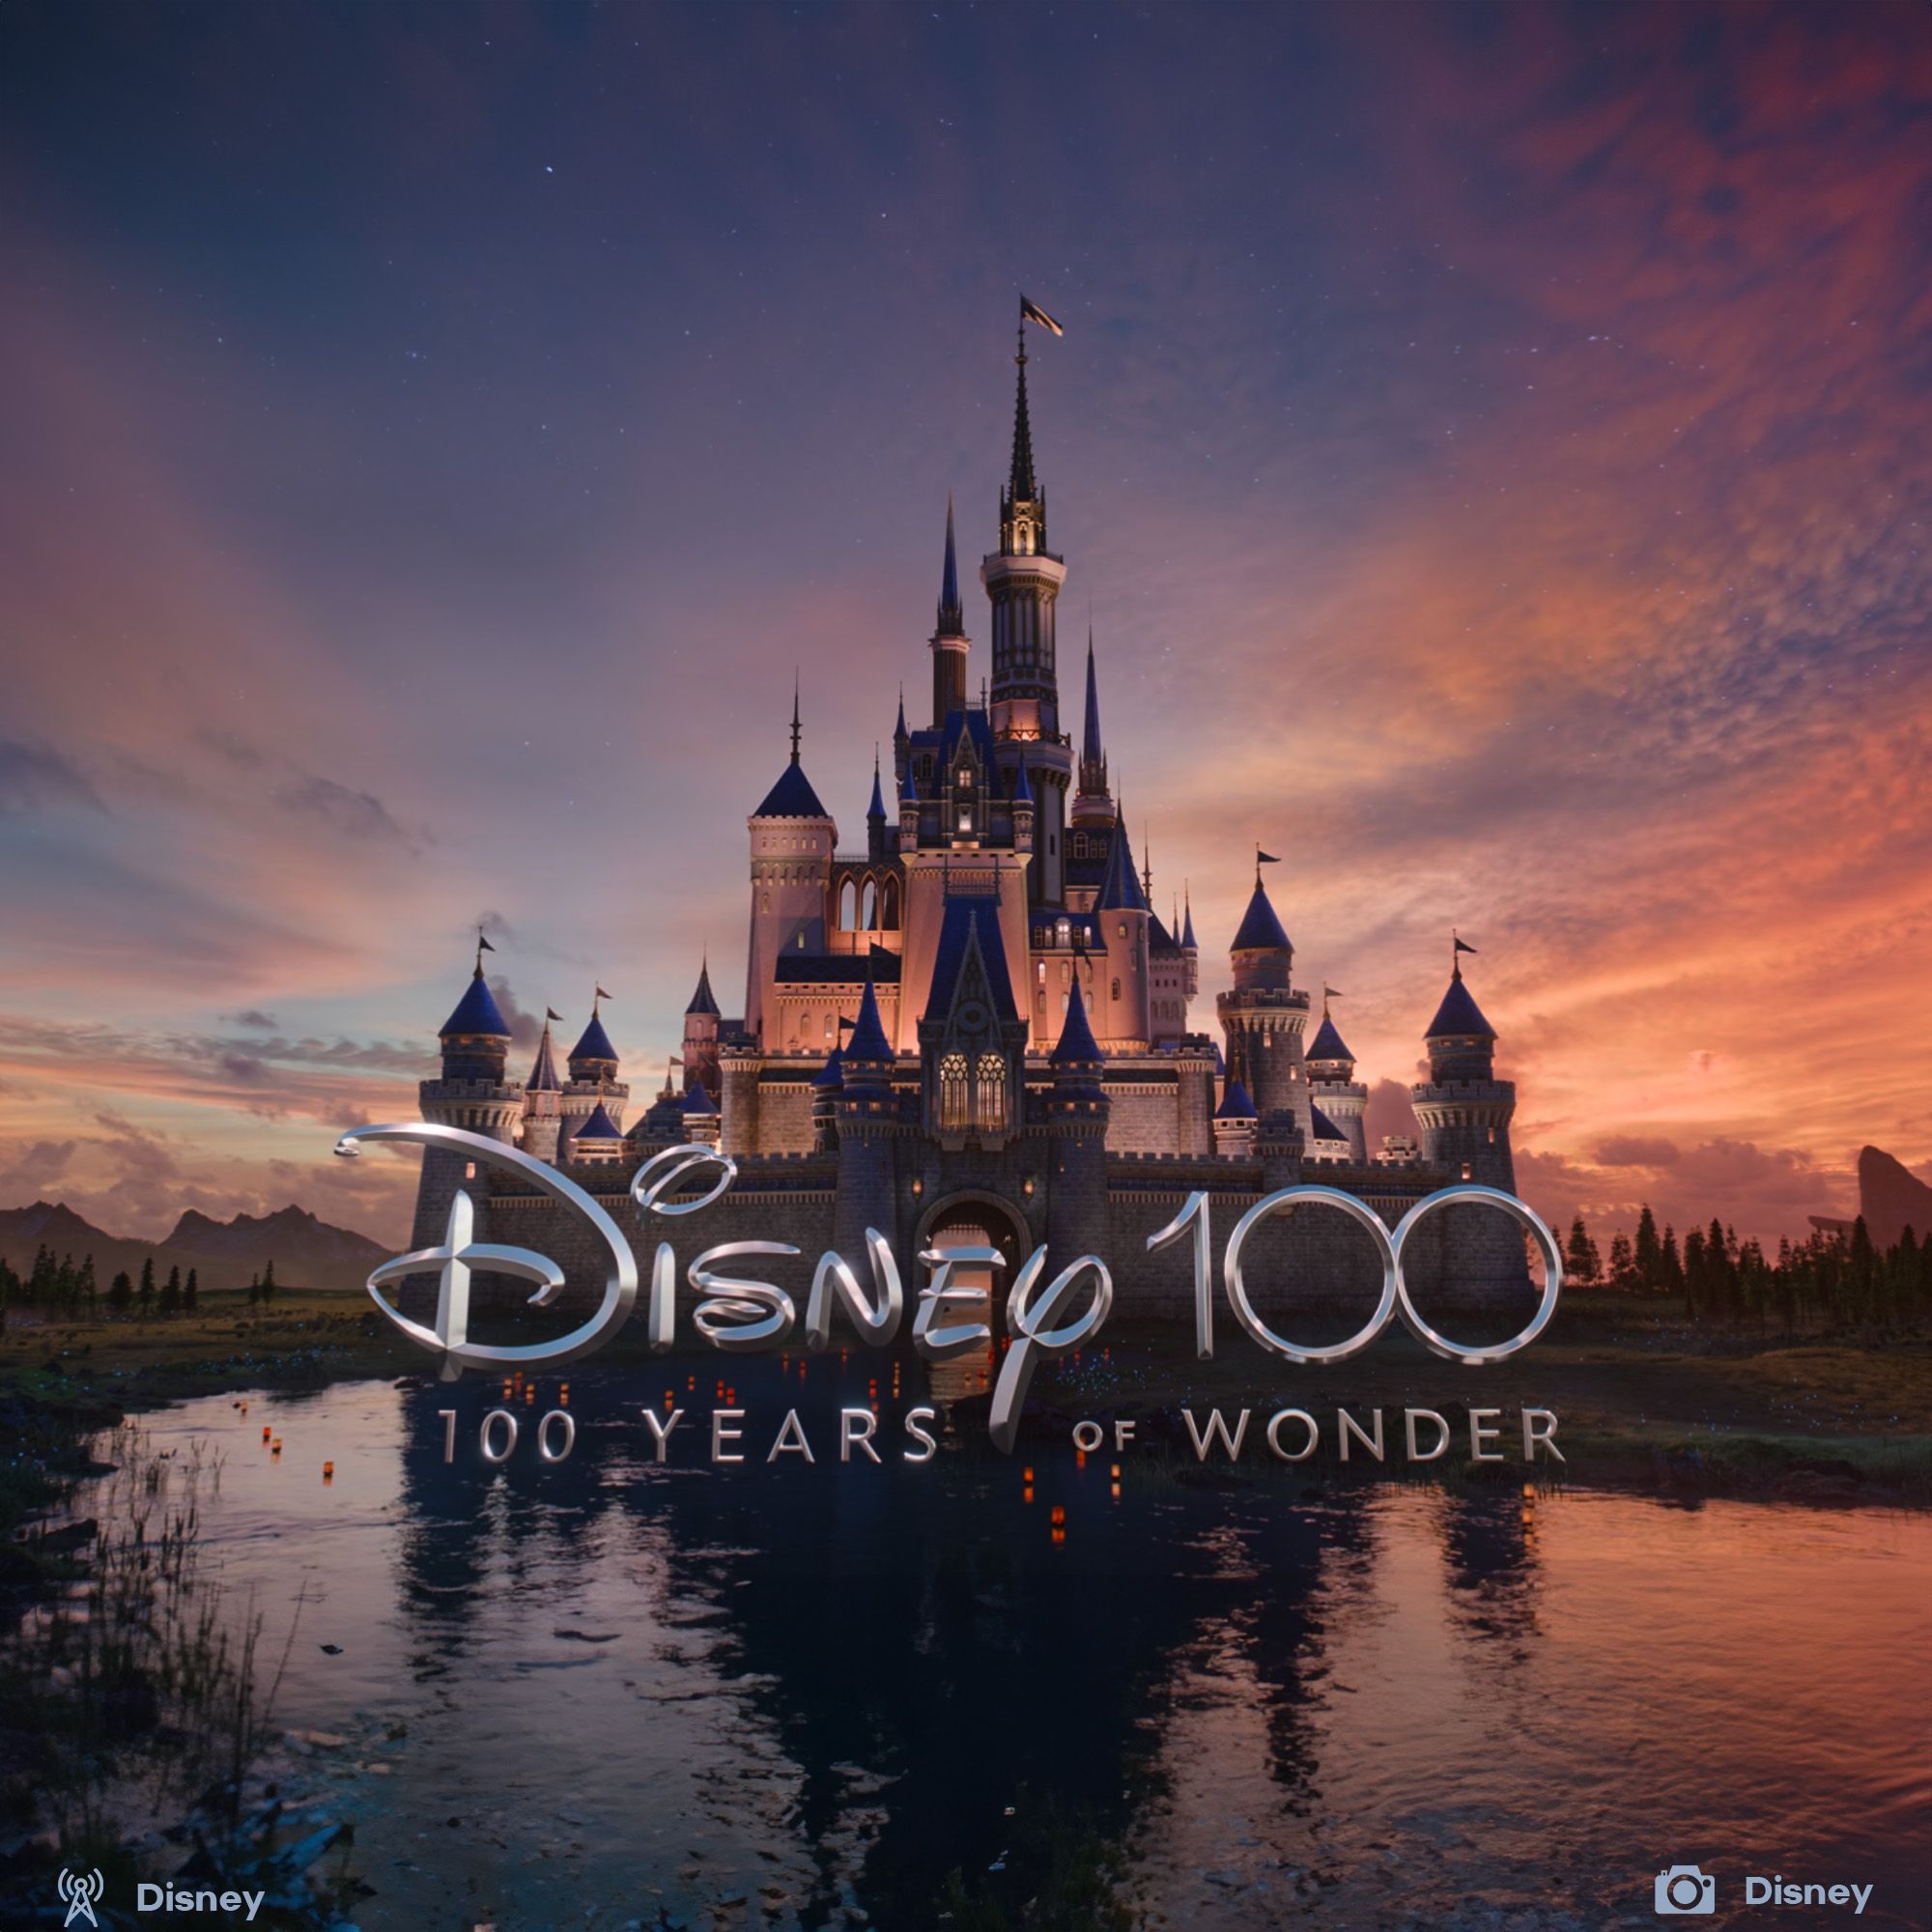 Disney turned 100